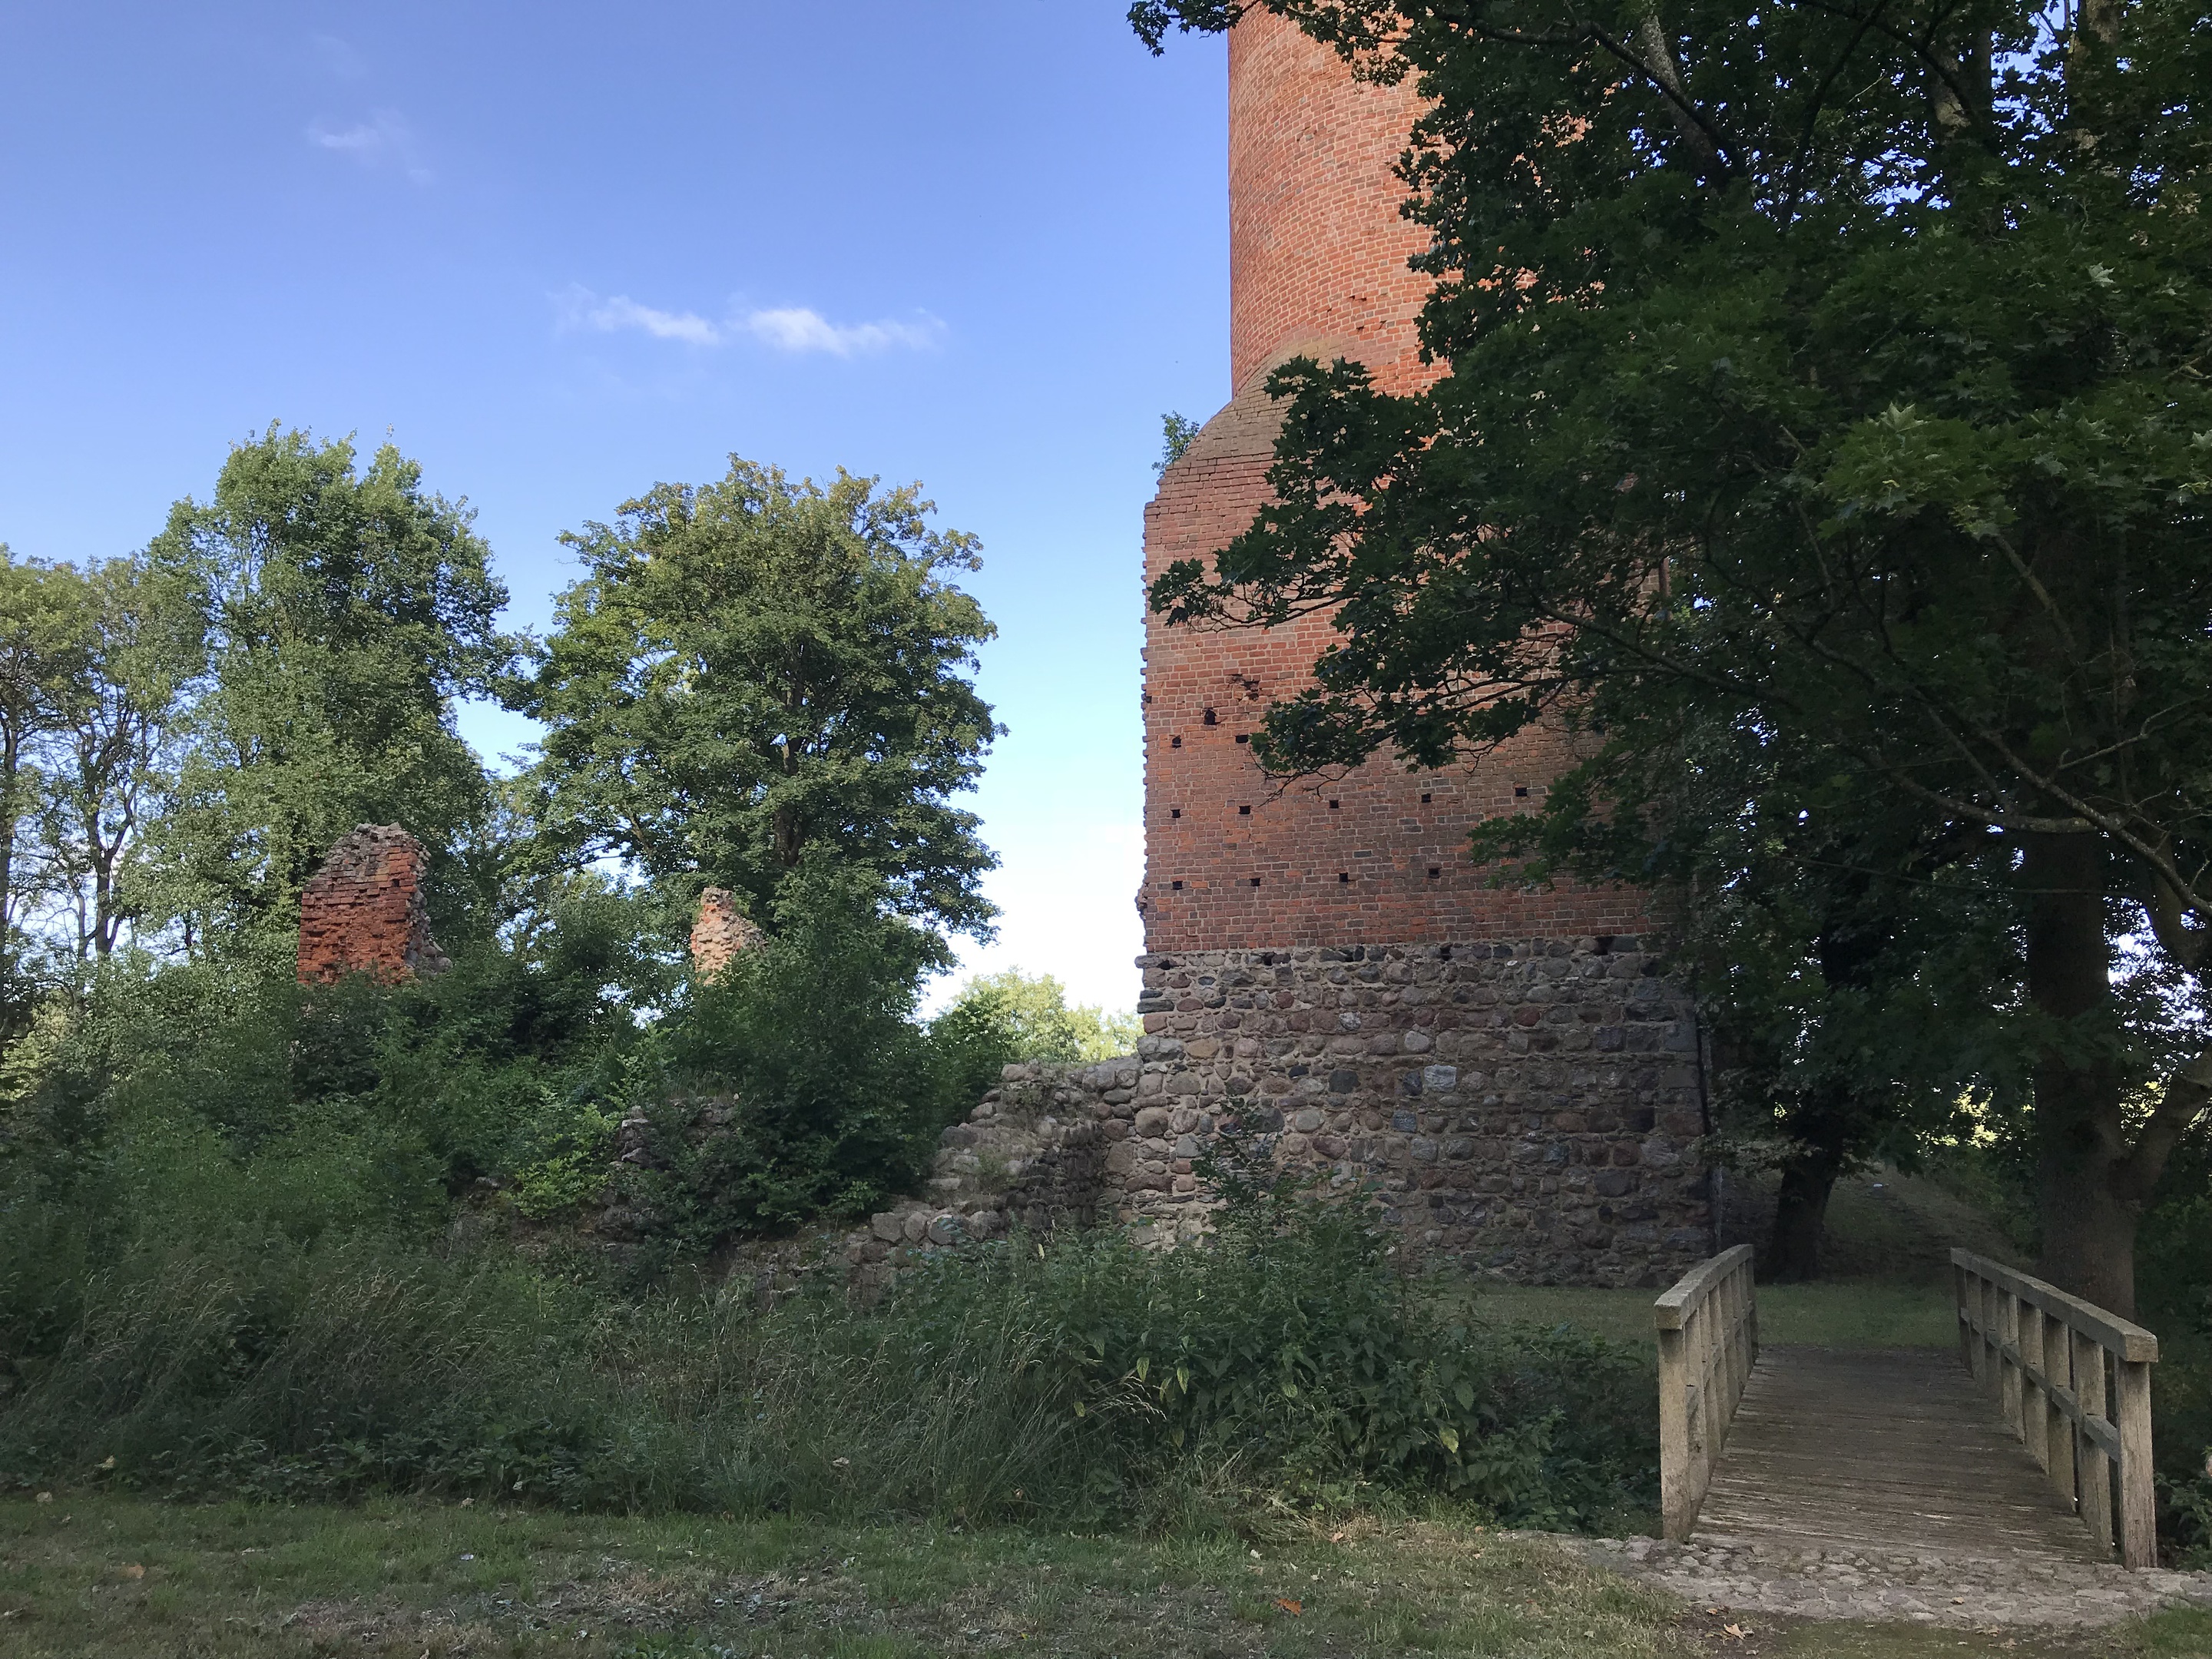 Weg zur Ruine der Blankenburg Wolfshagen, Foto: Anet Hoppe, Lizenz: Anet Hoppe